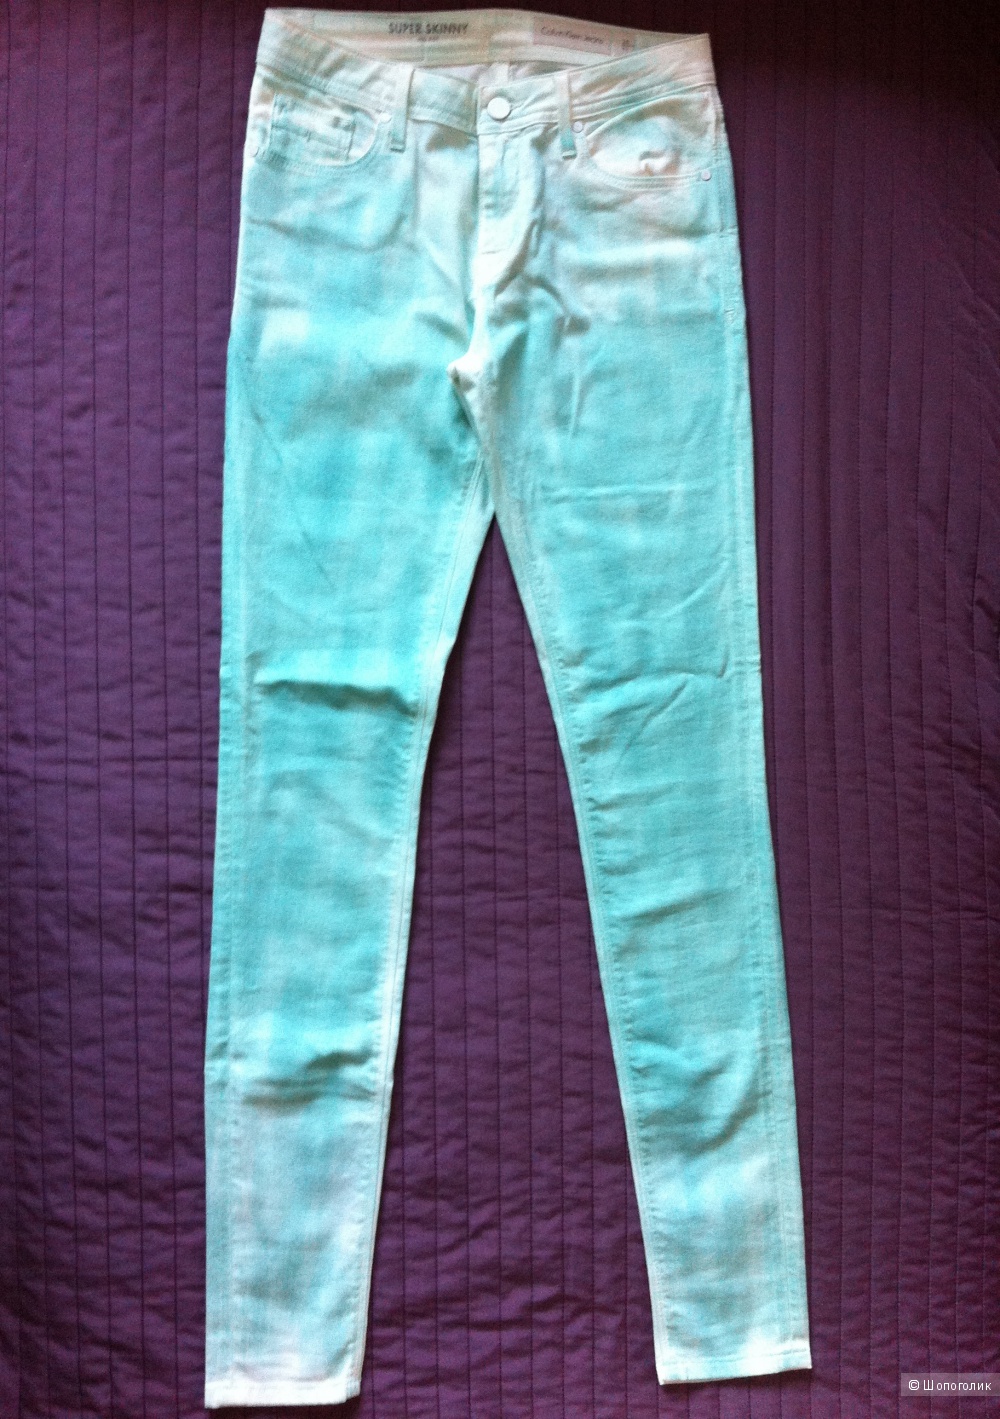 Джинсы Calvin Klein Jeans, 28 размер